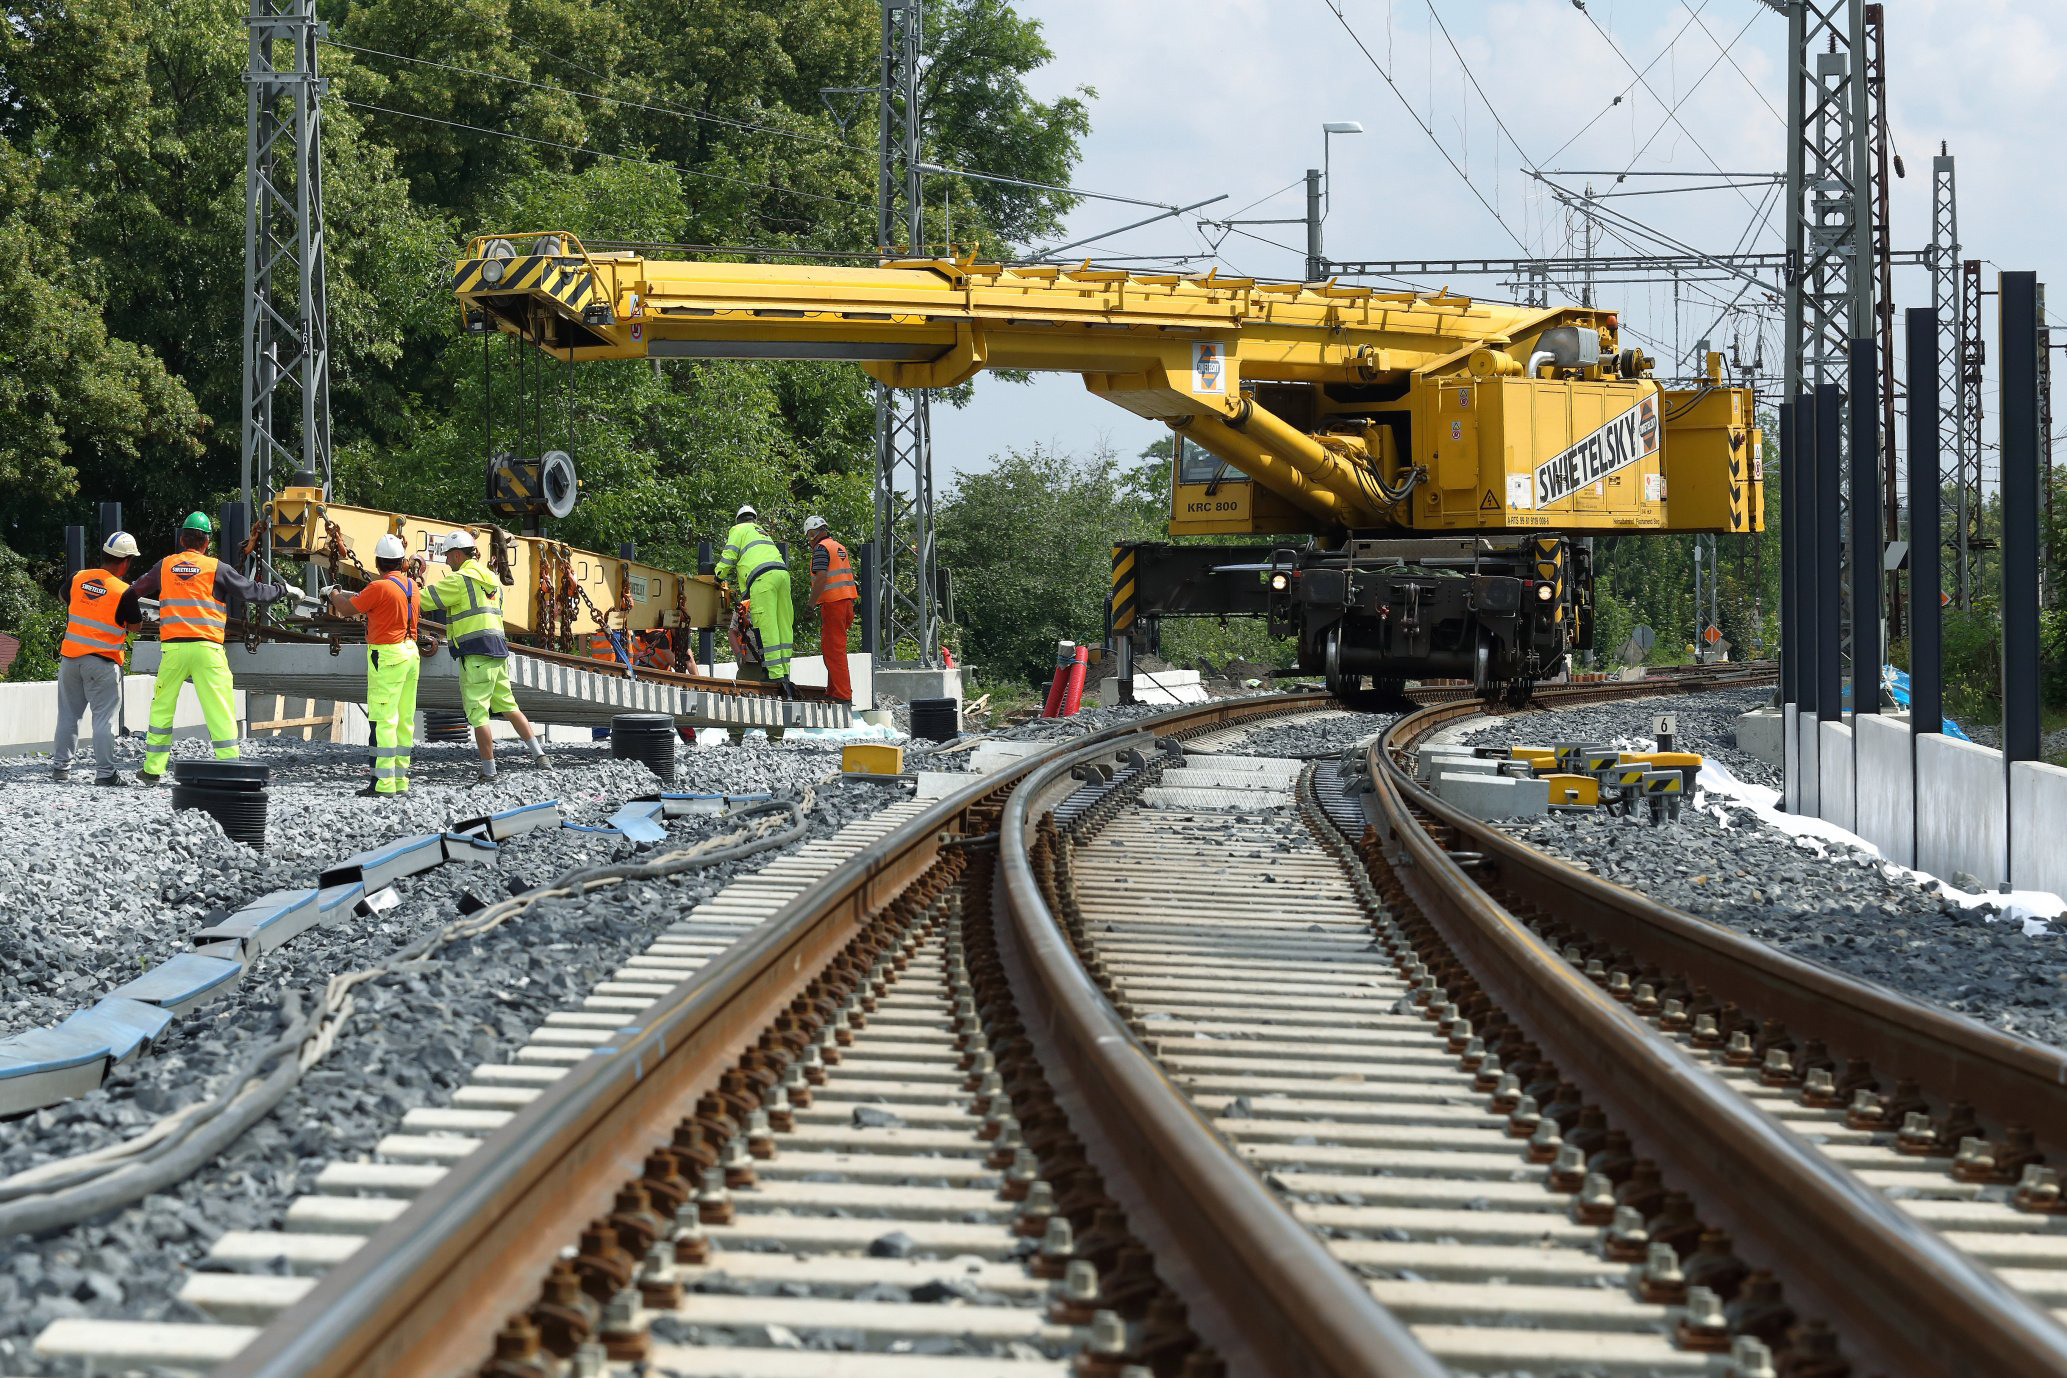 Obnova železniční stanice, Čelákovice - Izgradnja željezničke infrastrukture